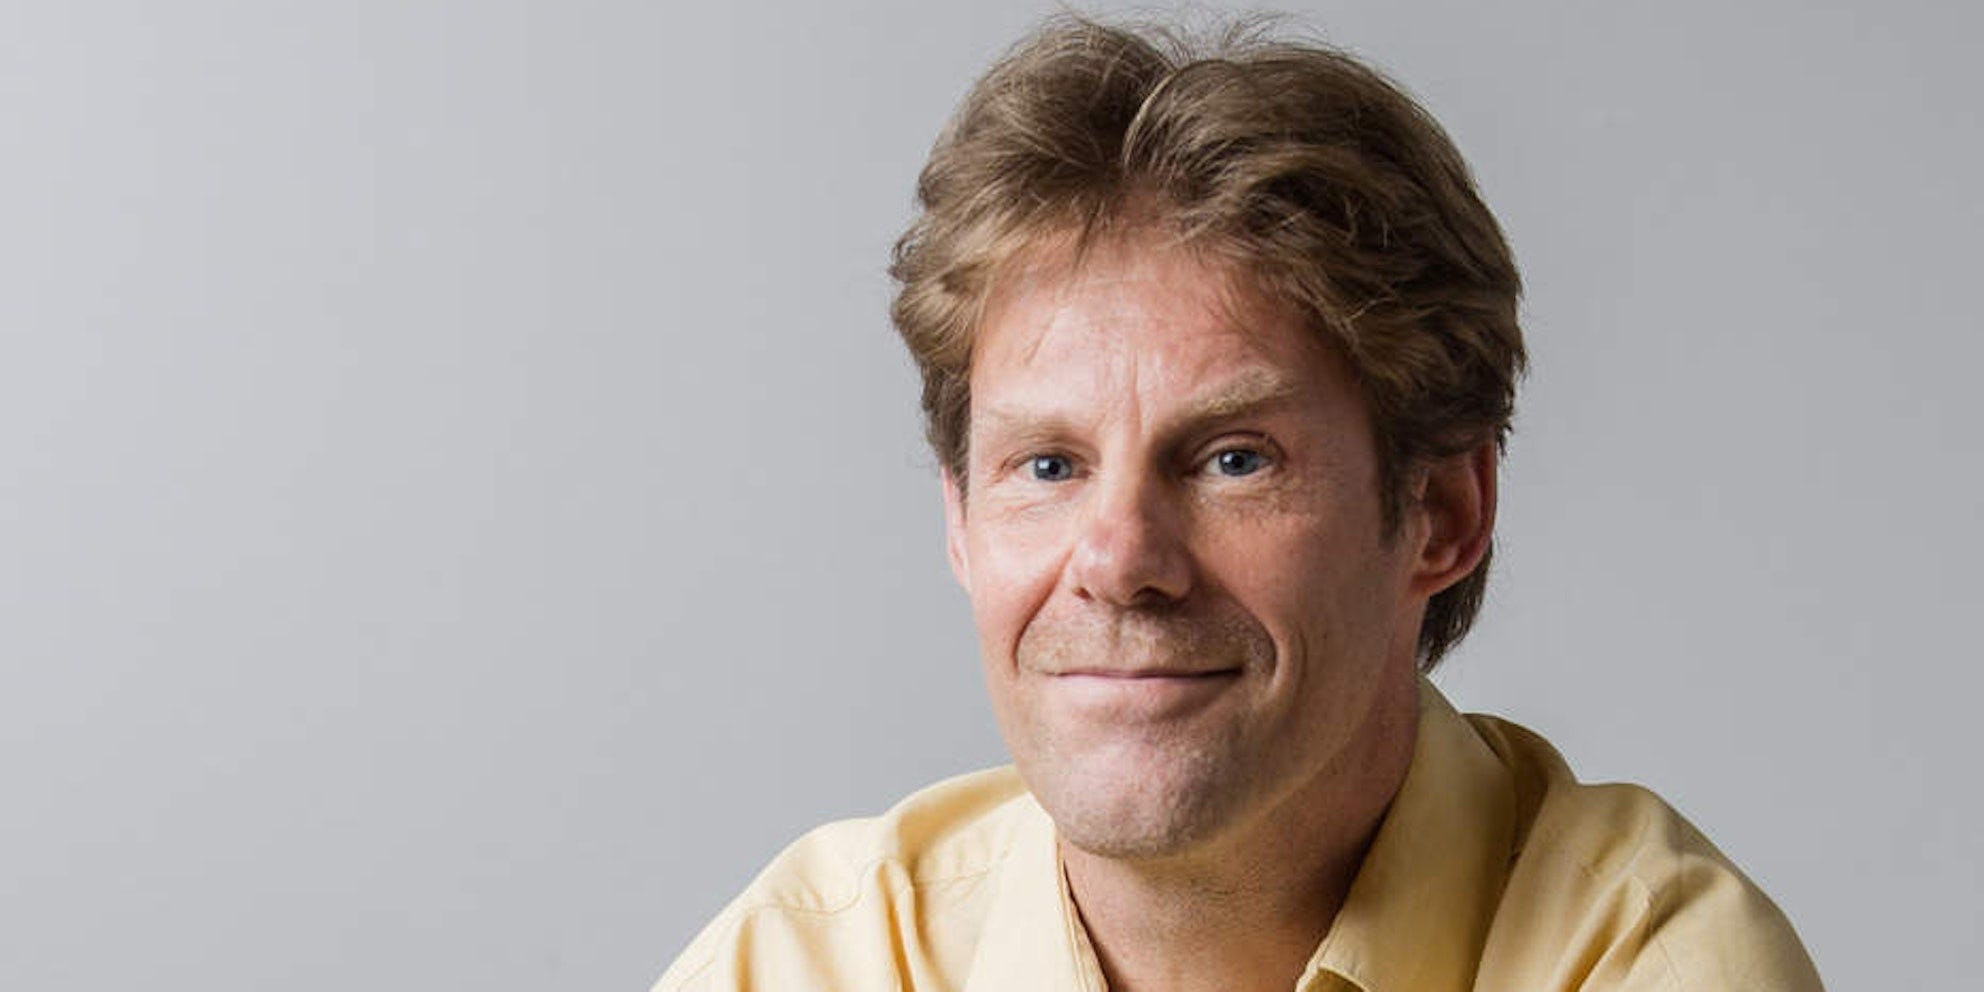 Gerard Parlevliet, Haaglanden MC